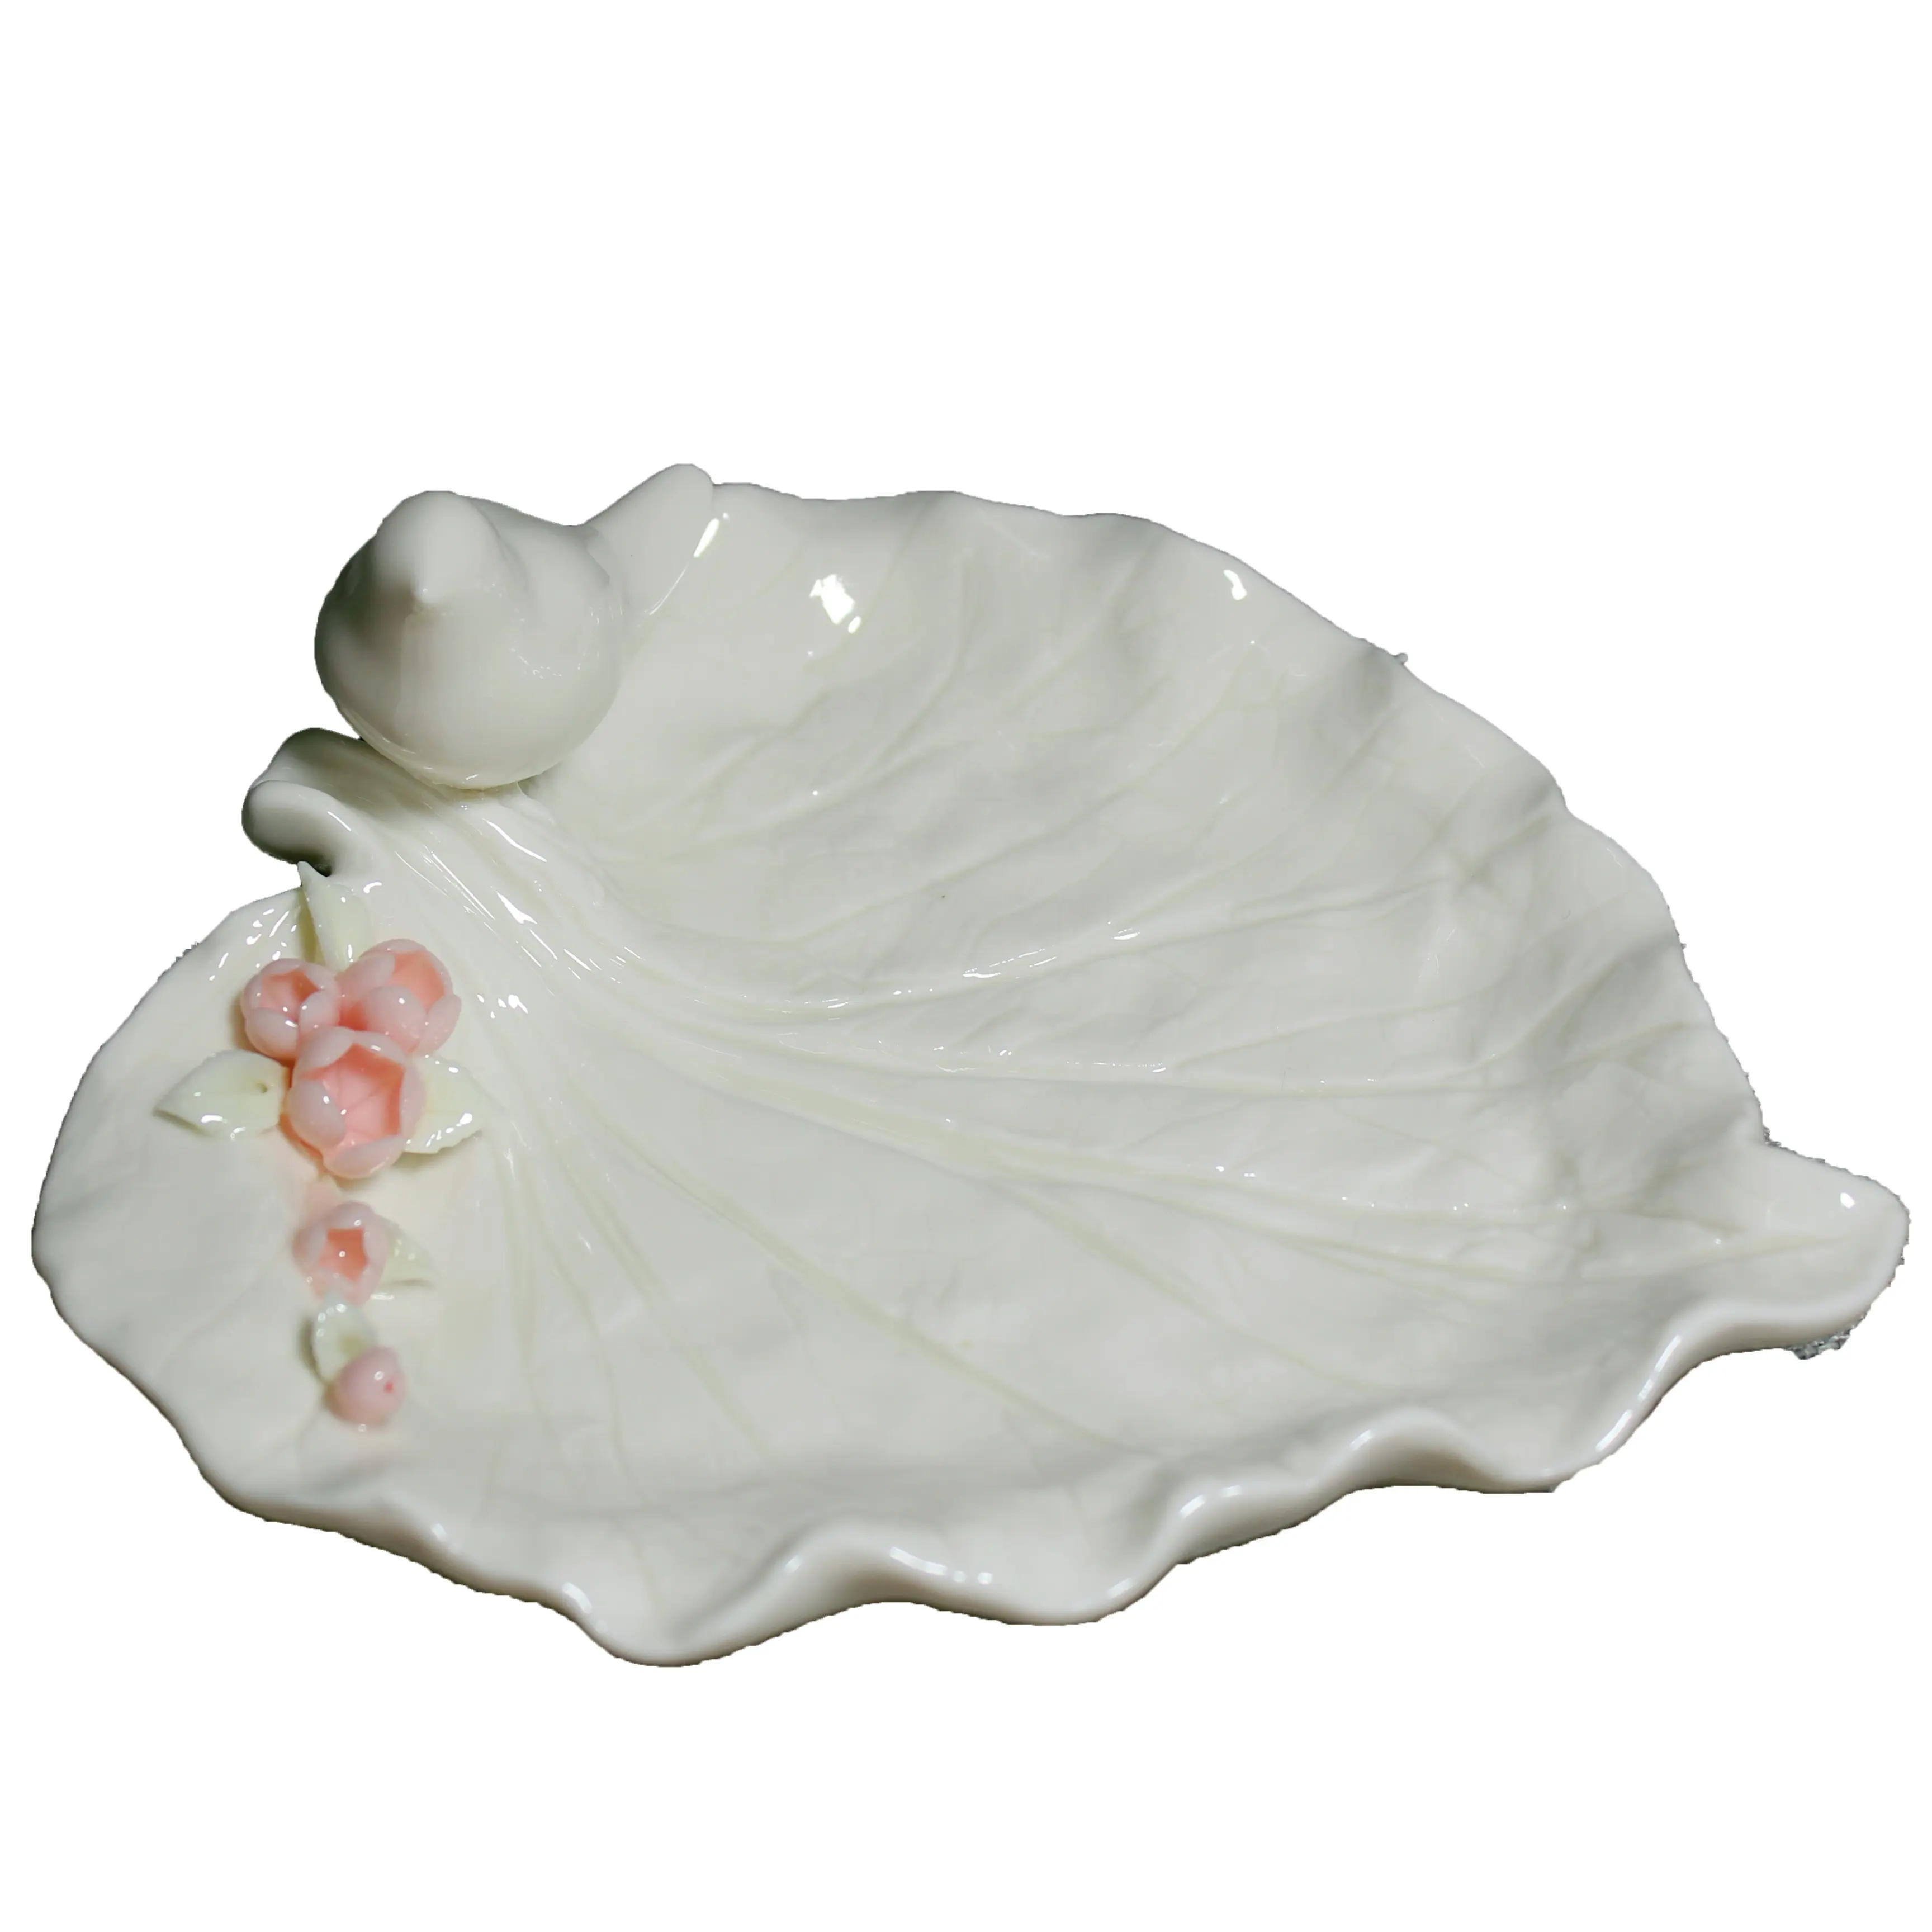 Porselen kase seramik yaprak şeklinde çanak kuş ve çiçek beyaz çömlek plaka düğün parti ve ev dekorasyonu